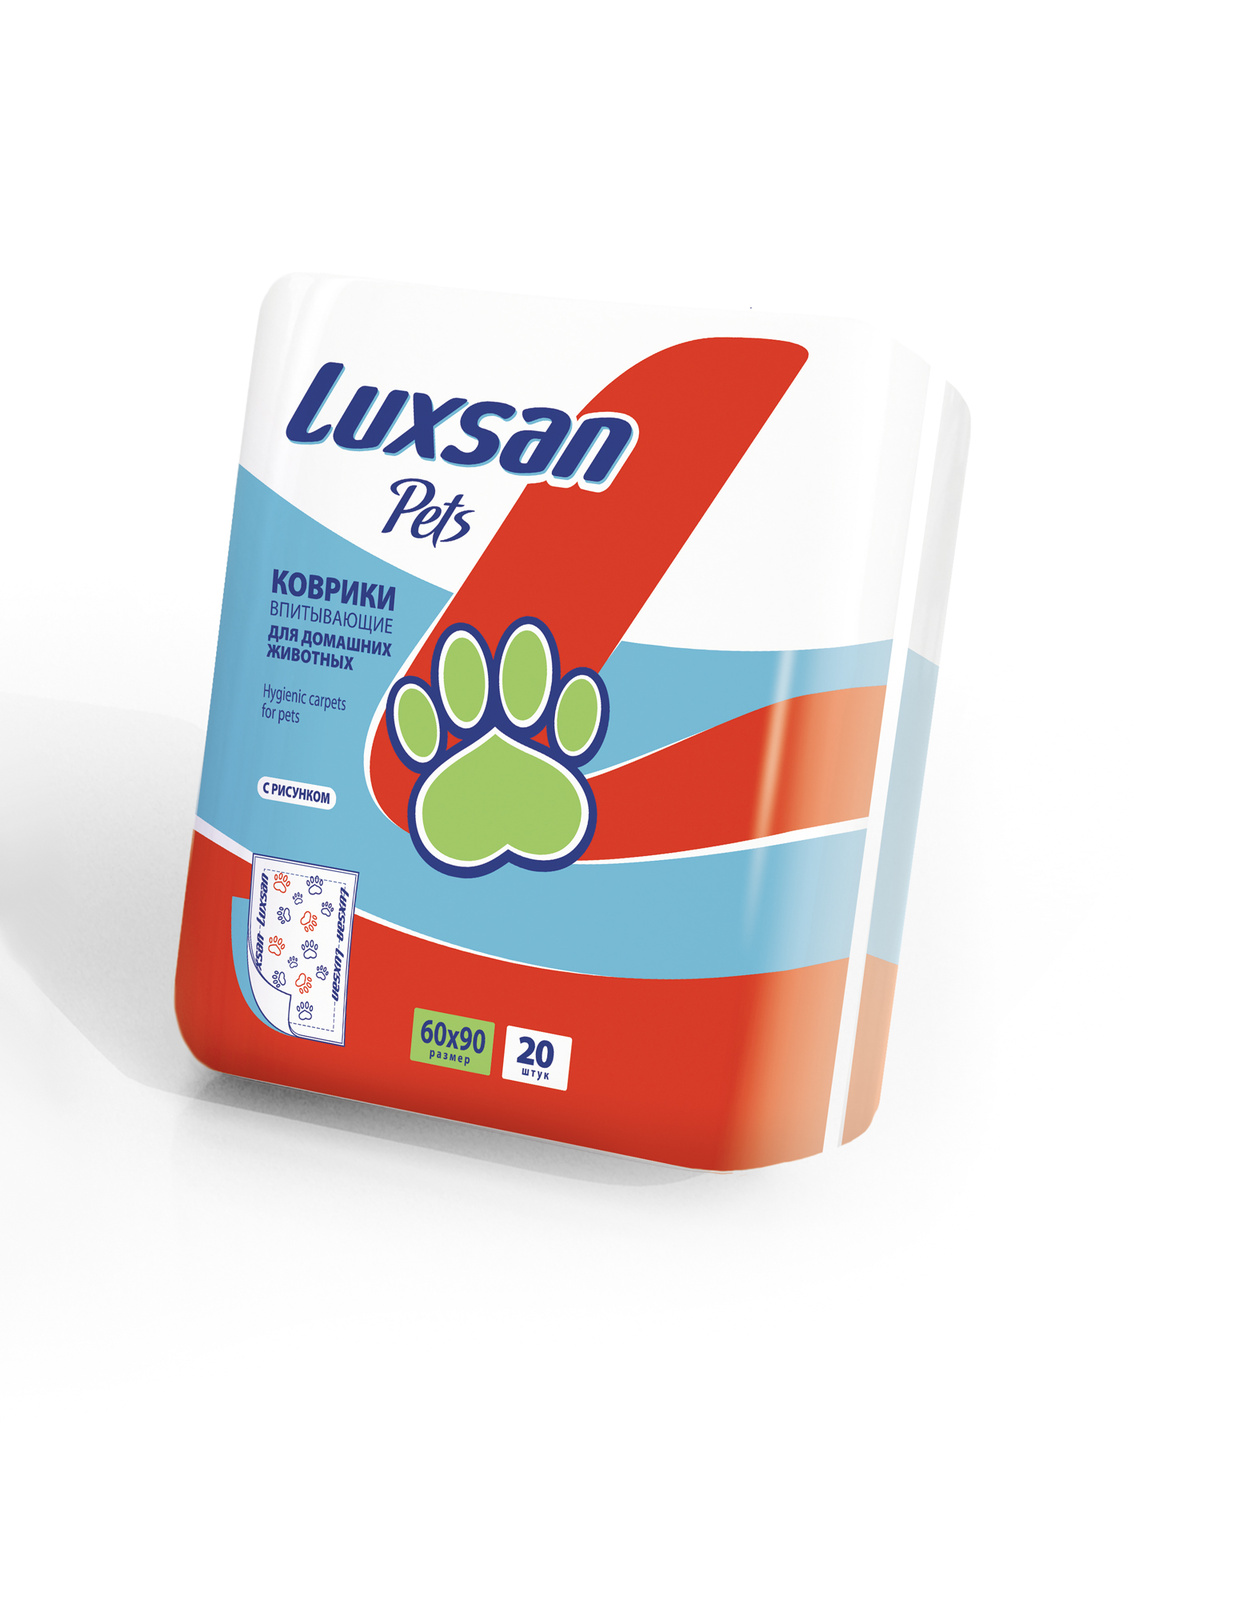 Luxsan Luxsan пеленки для животных 60x90 см (100% целлюлоза) (1,64 кг)